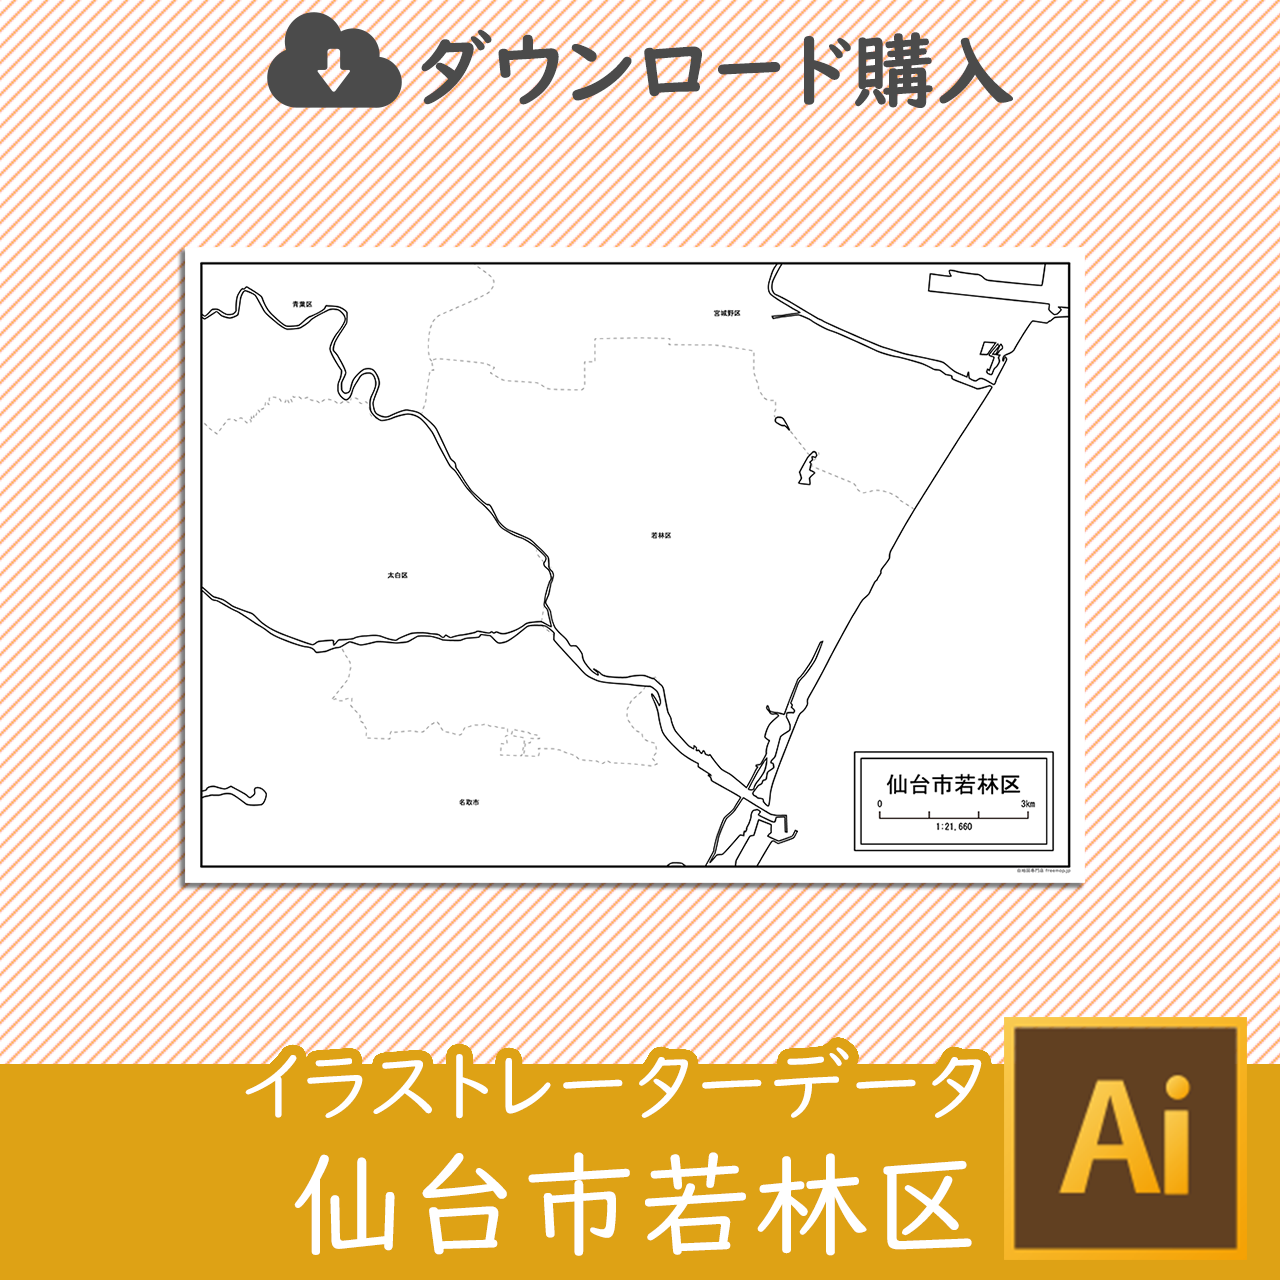 仙台市若林区のaiデータのサムネイル画像